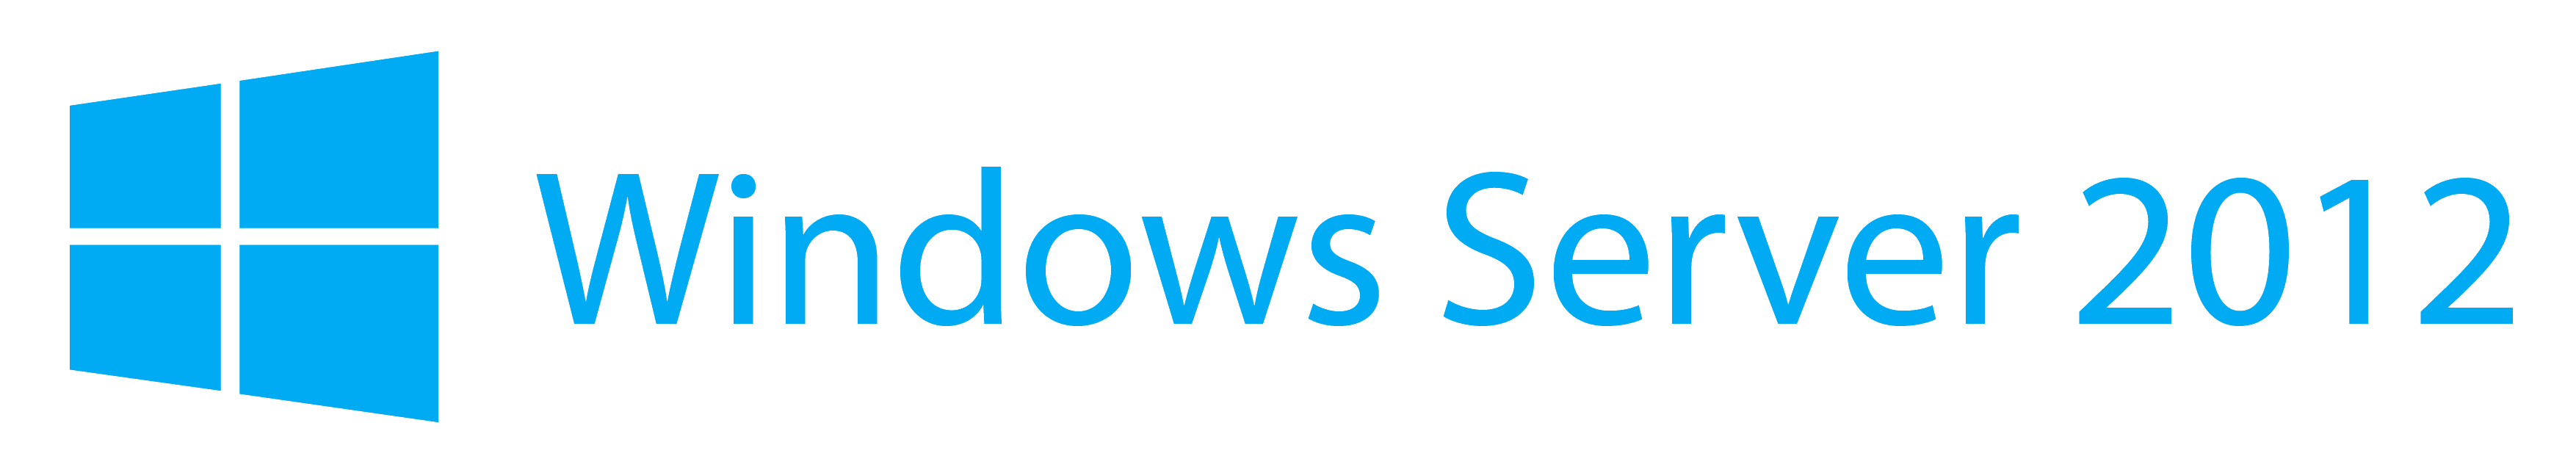 Windows Server 2012 Logo - Windows Server 2012 Logo.png